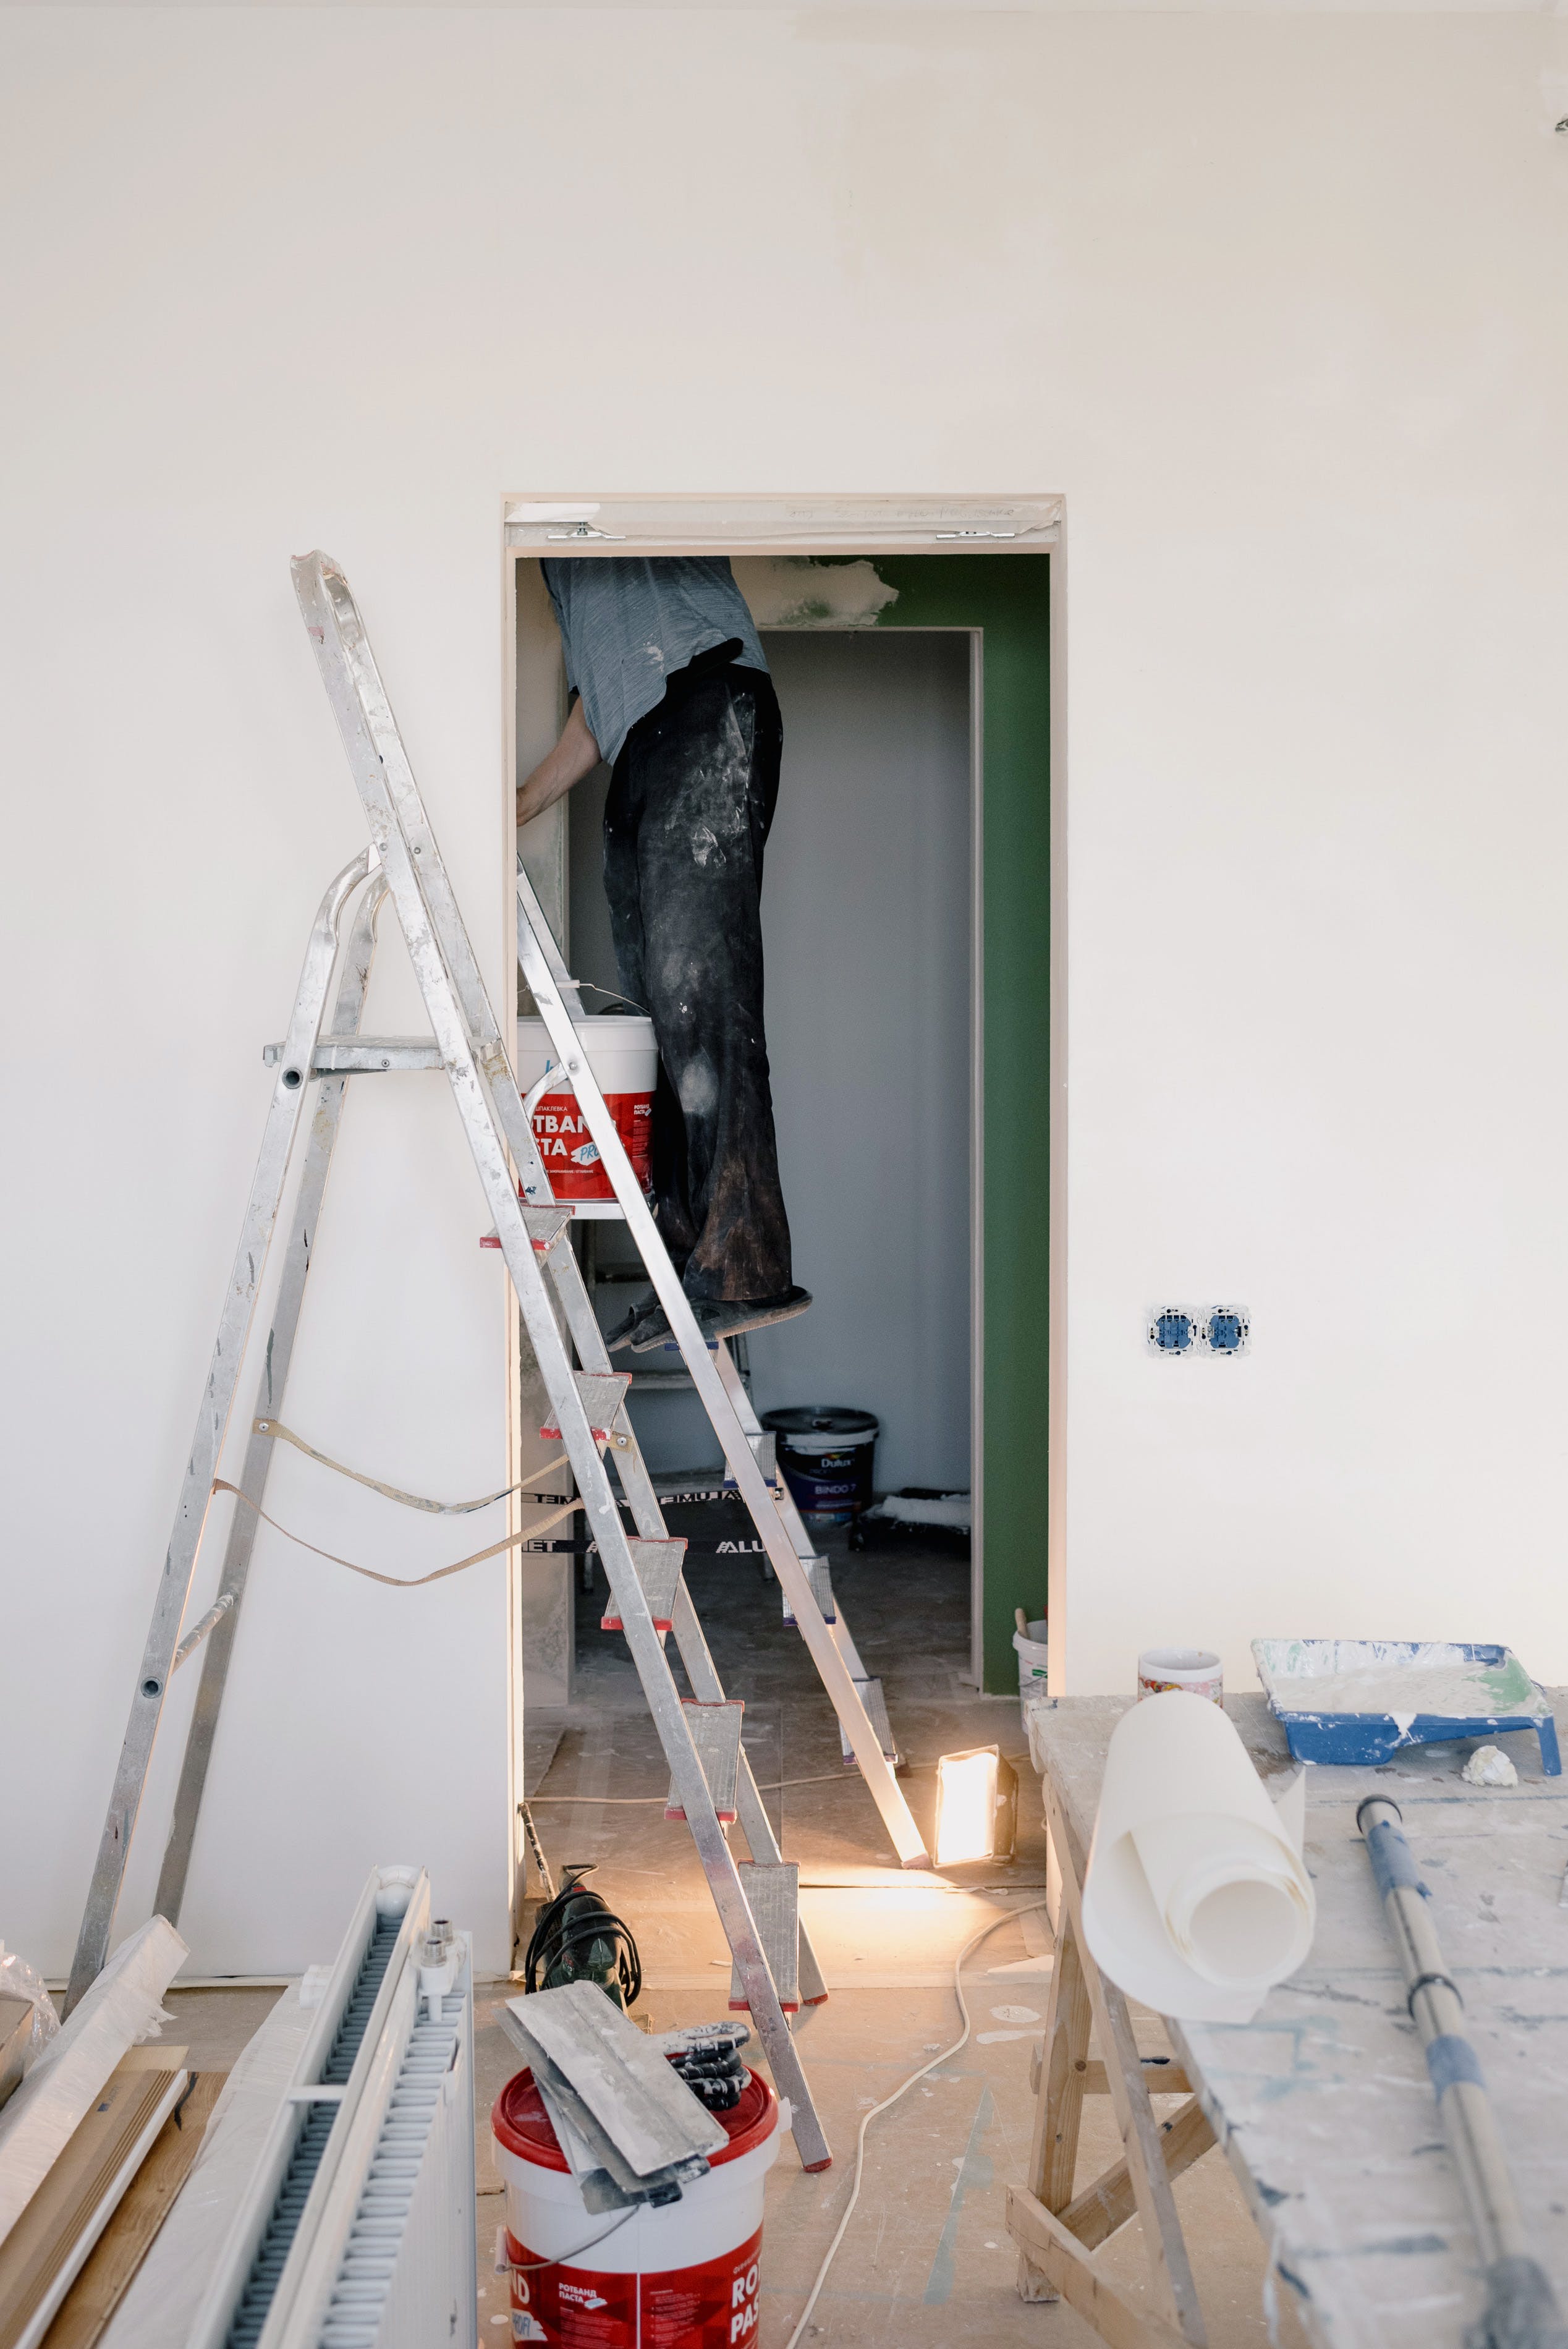 Mann steht auf einer Leiter und malert ein Zimmer.